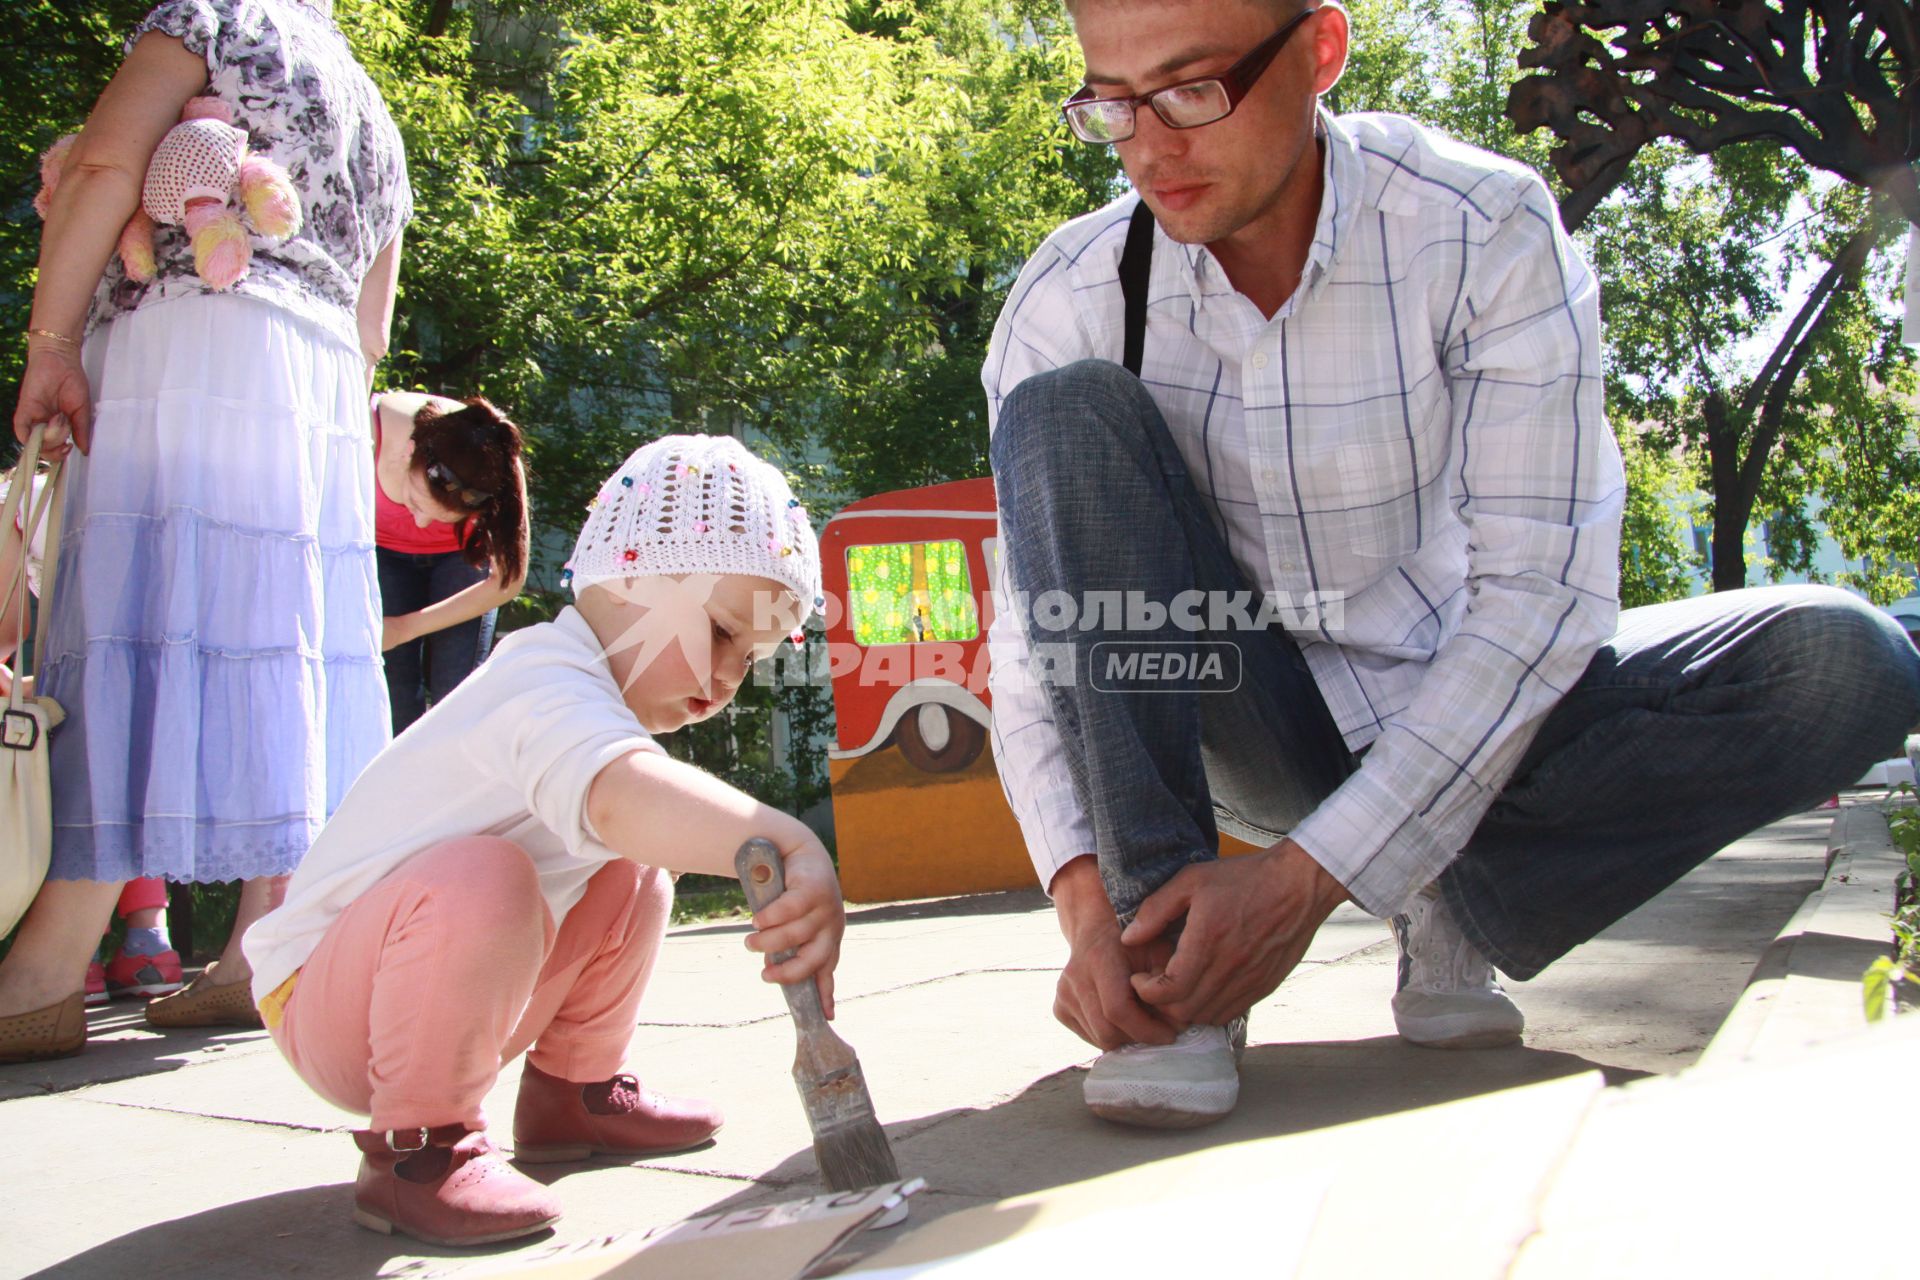 Ребенок с кистью в руках разукрашивает картон под чутким присмотром отца.